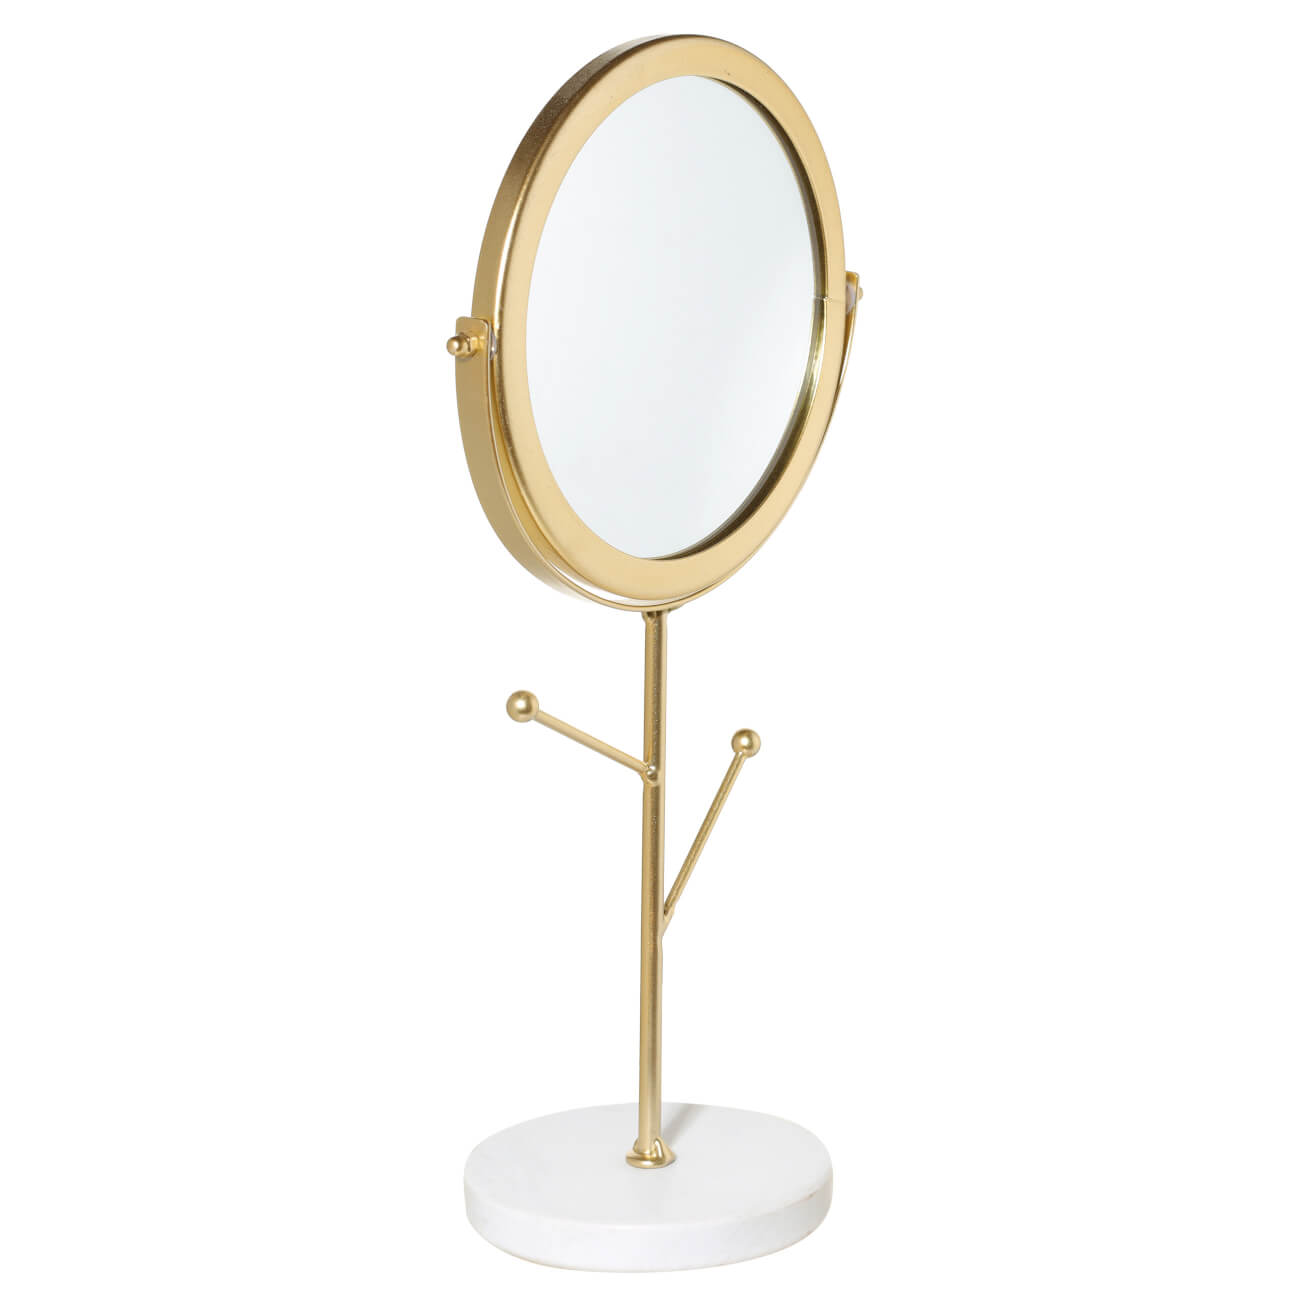 Зеркало настольное, 30 см, на ножке, с держателями для украшений, металл, золотистое, Maniera